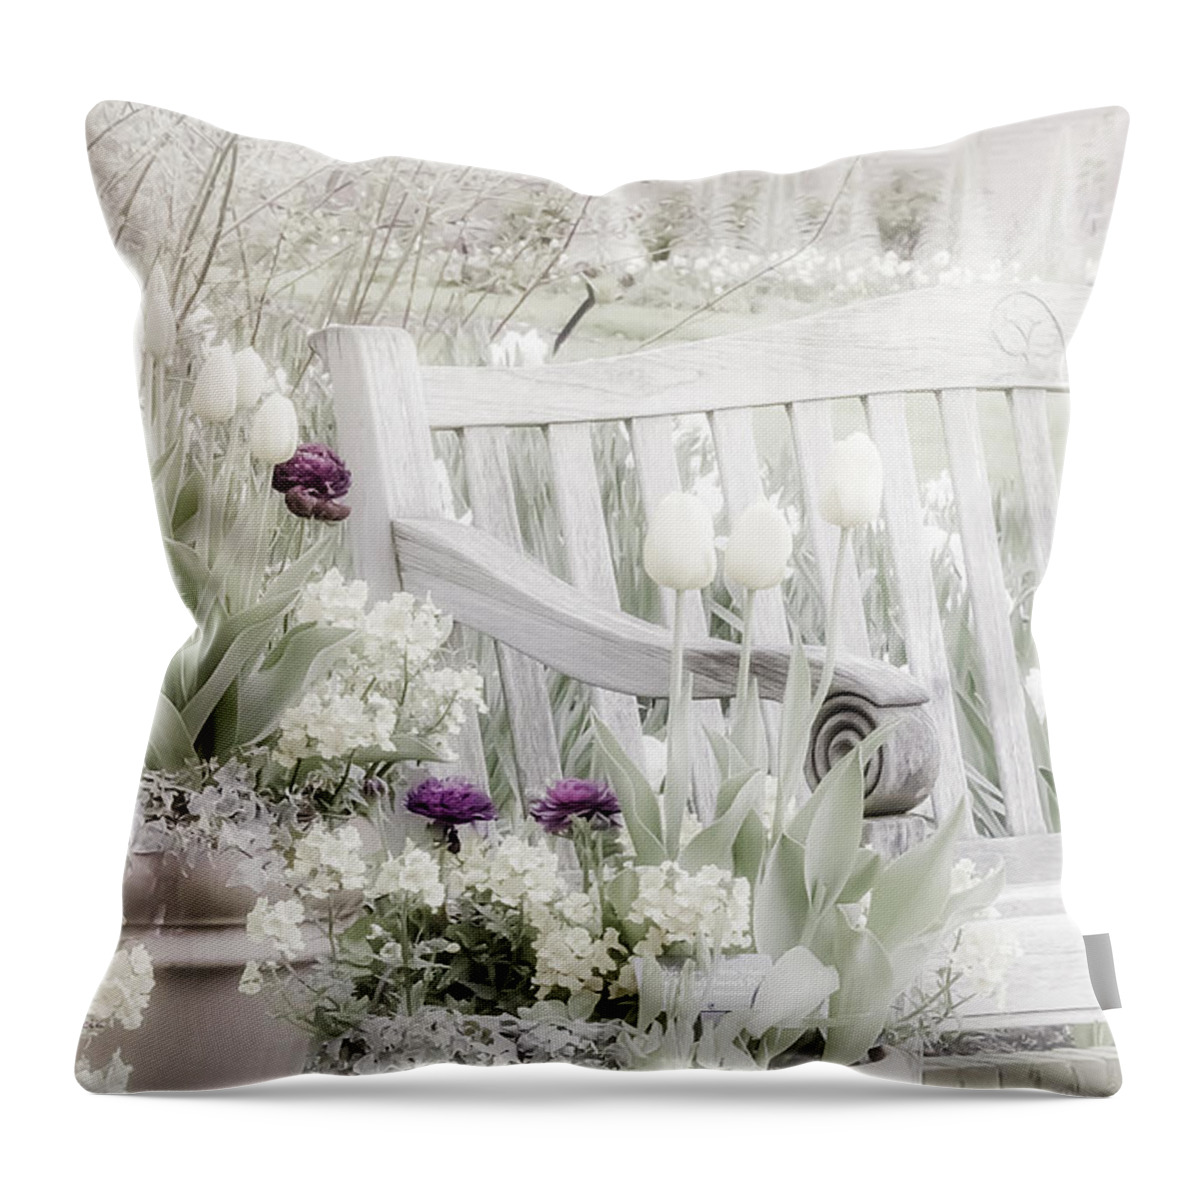 Garden Throw Pillow featuring the photograph Beauty of a Spring Garden #2 by Julie Palencia